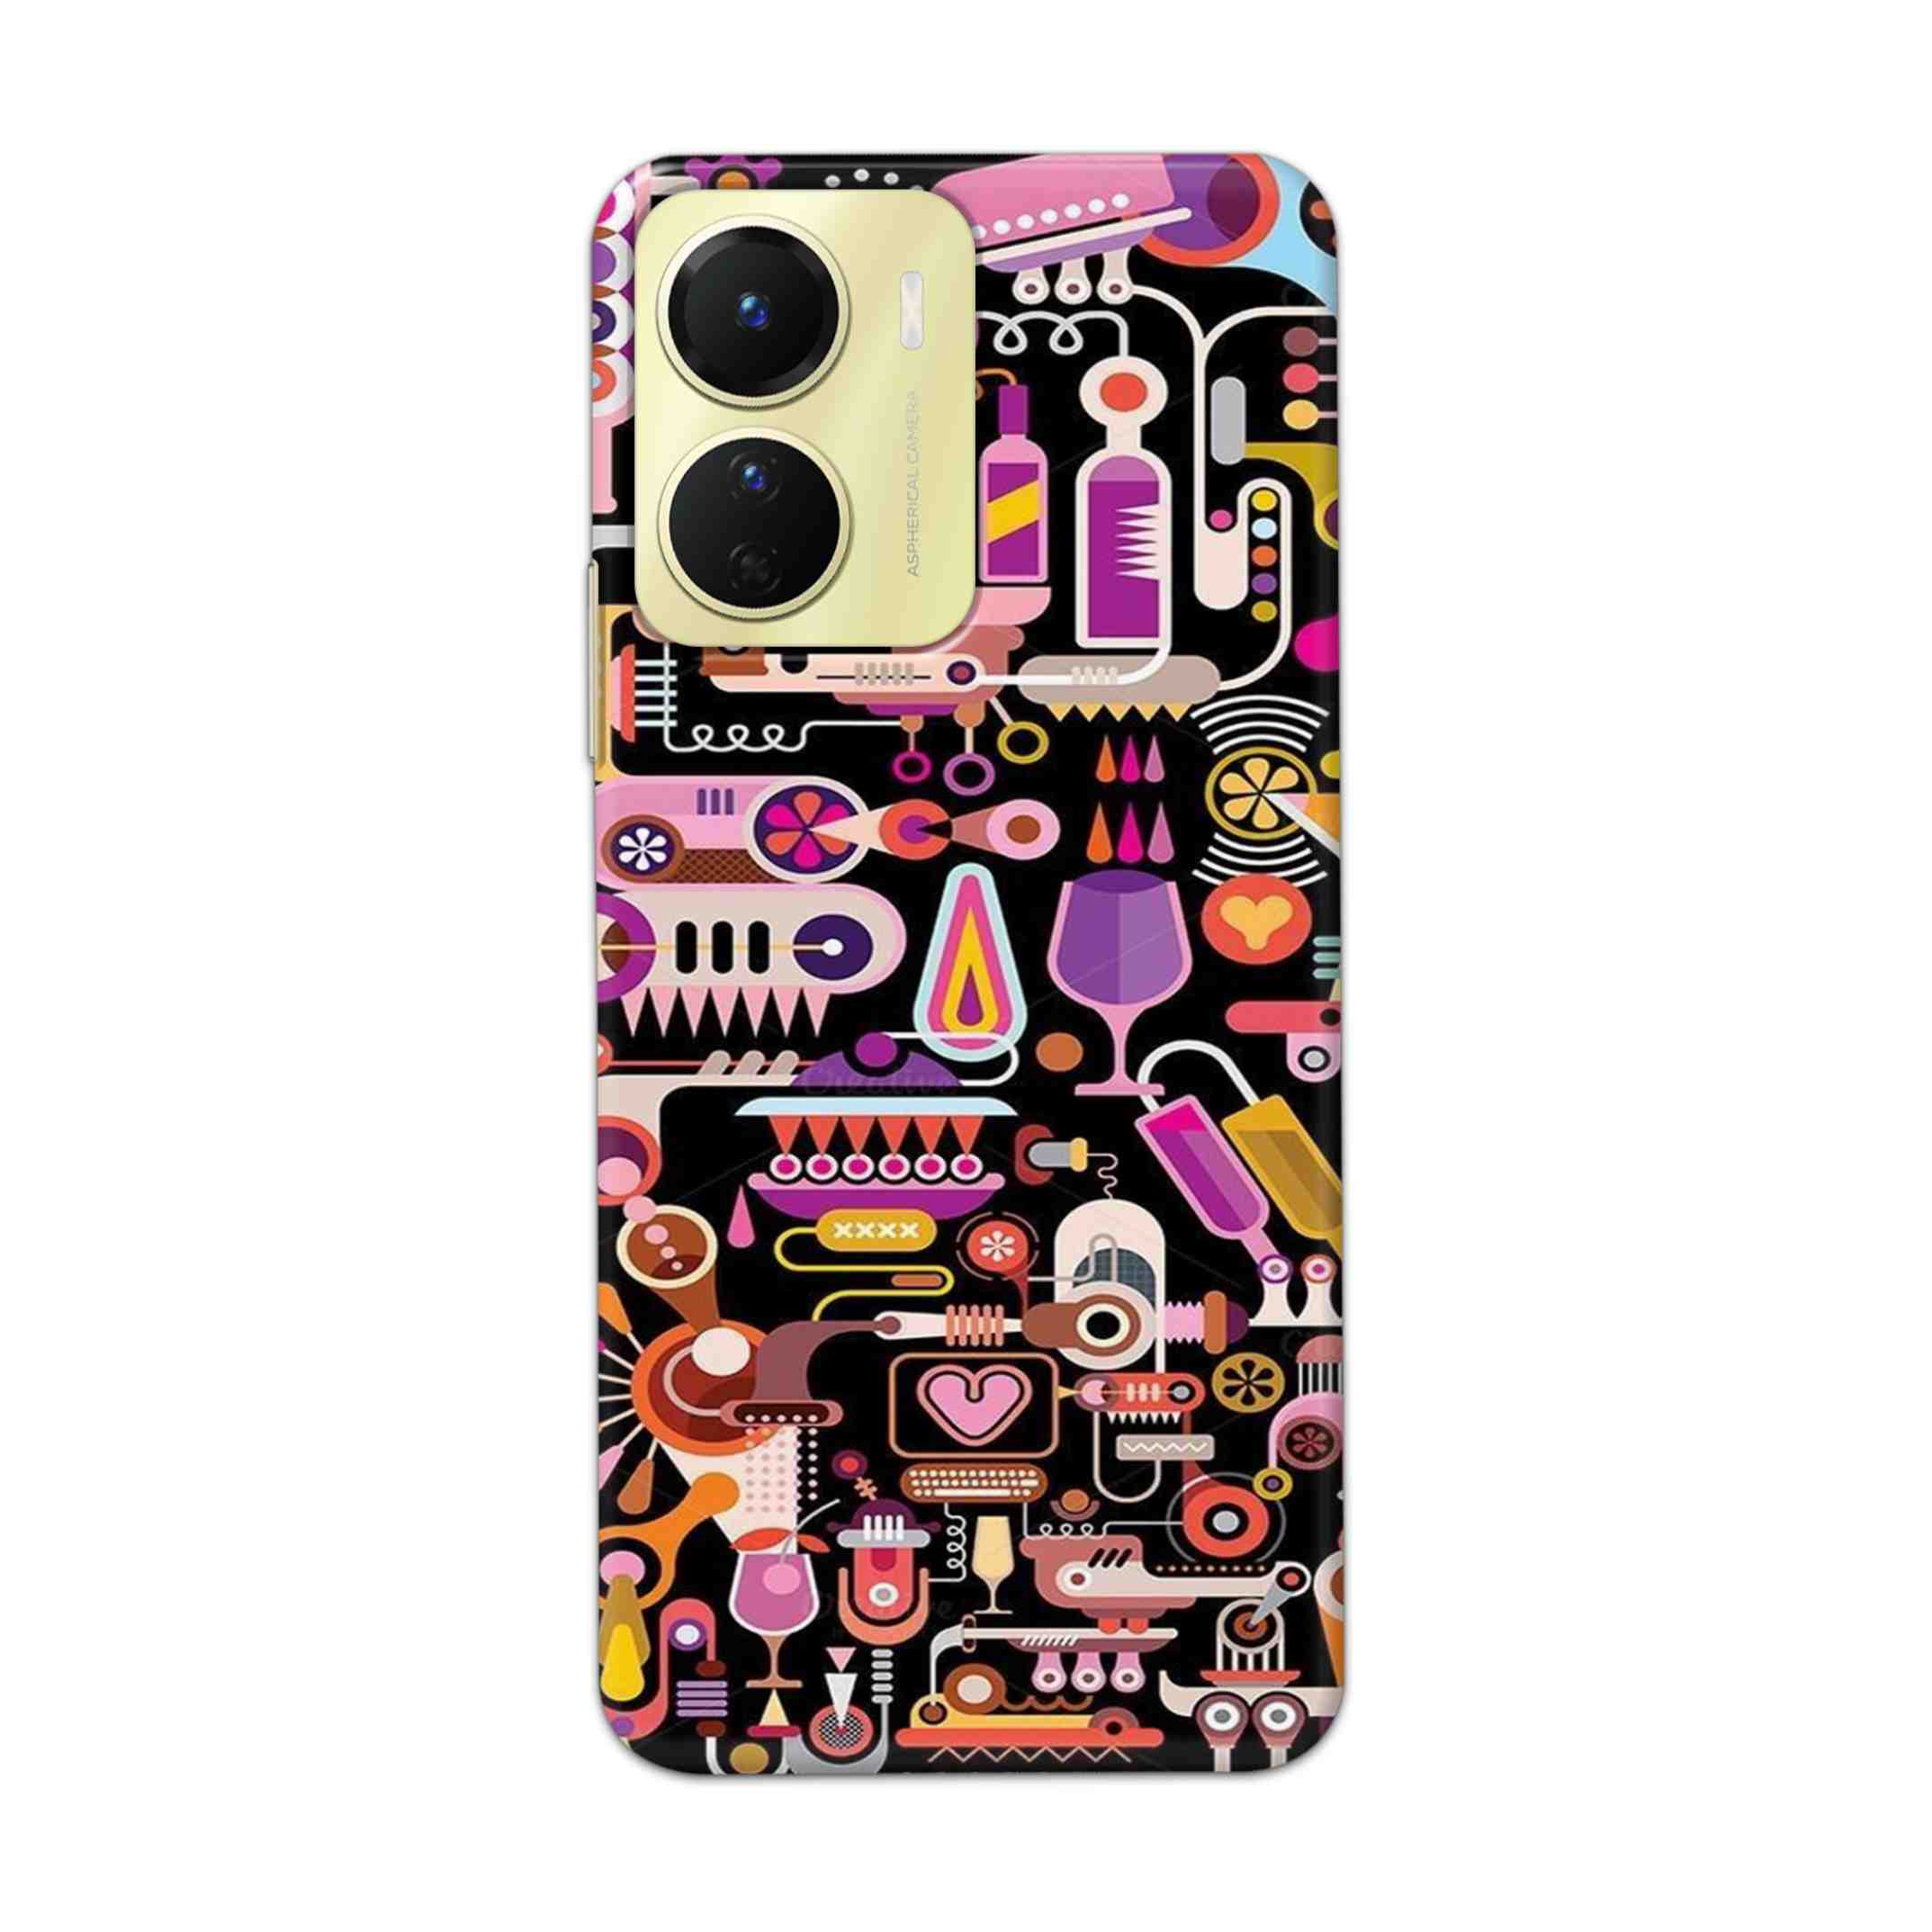 Buy Lab Art Hard Back Mobile Phone Case Cover For Vivo Y16 Online